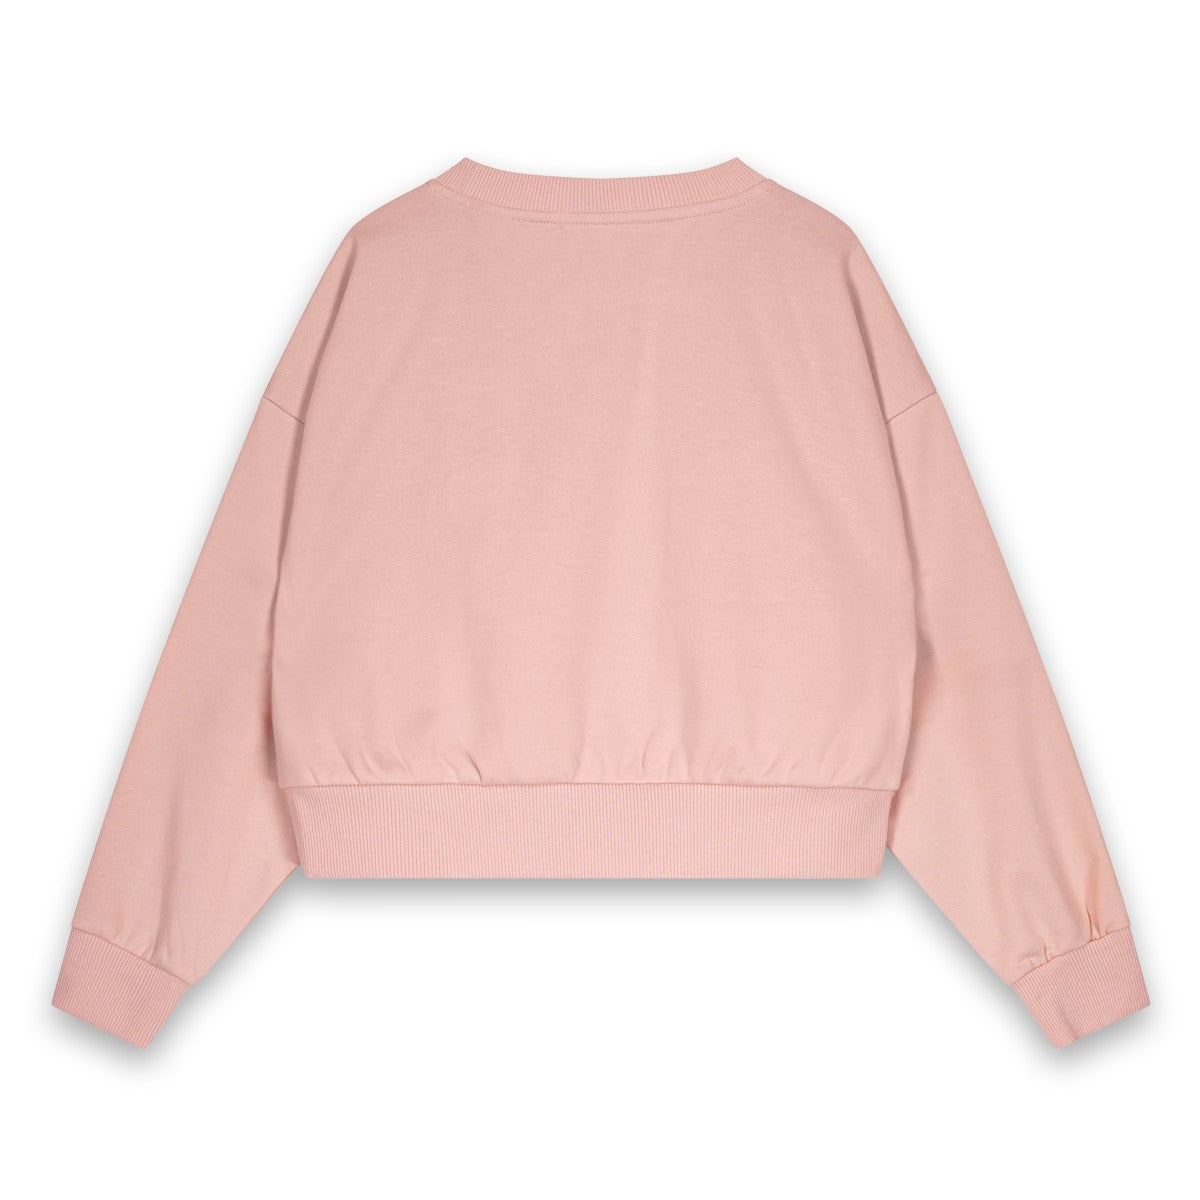 Sweater KEYSTONE SOFT PINK